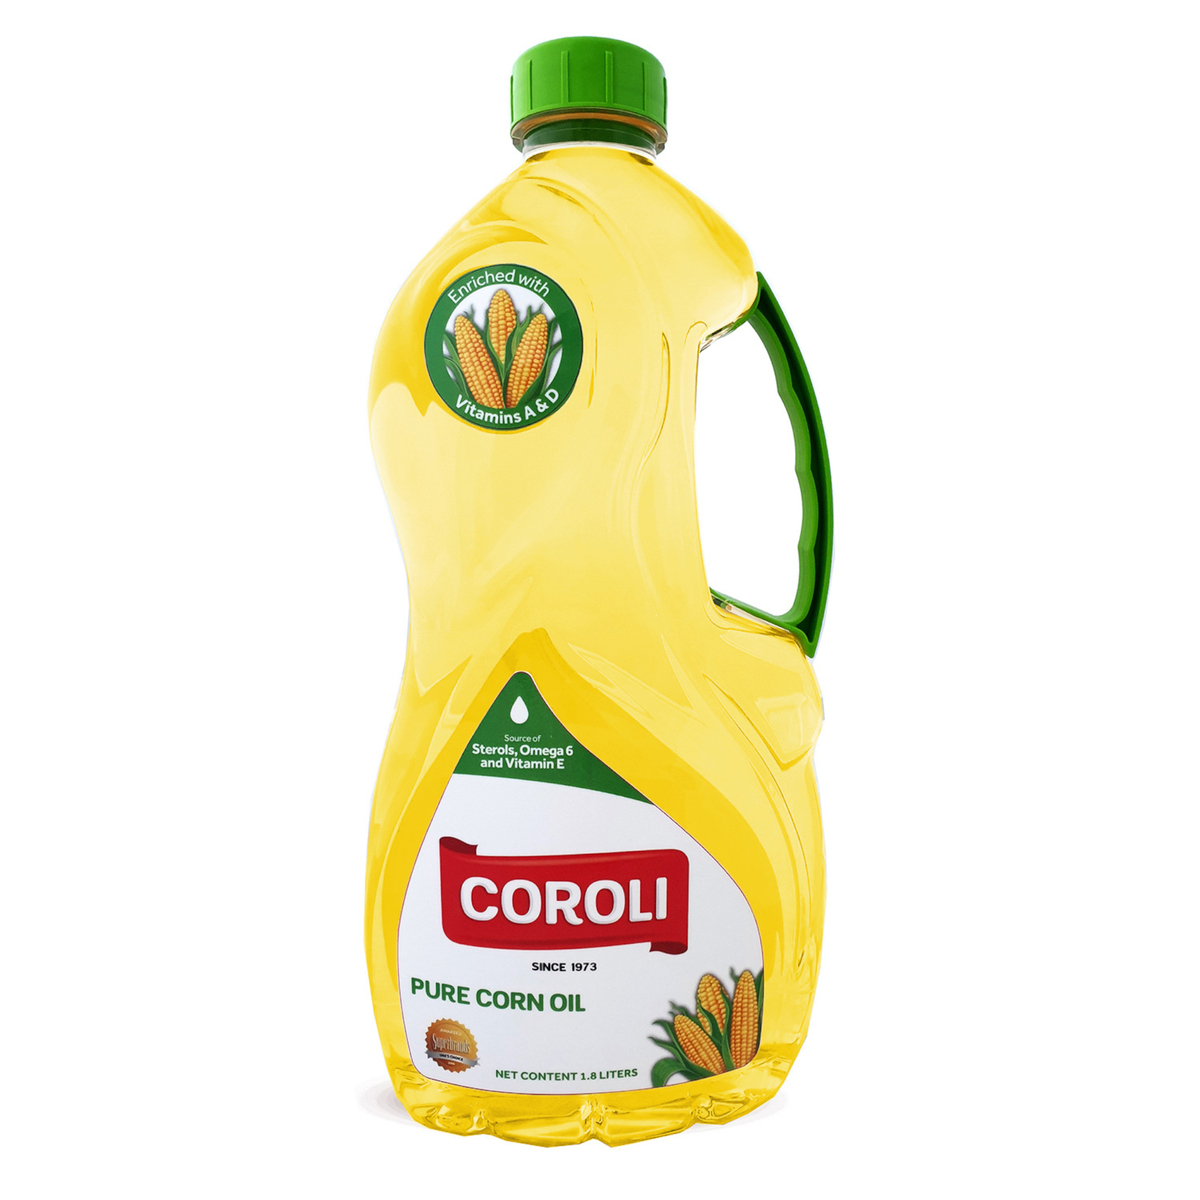 Coroli Pure Corn Oil 1.8Litre